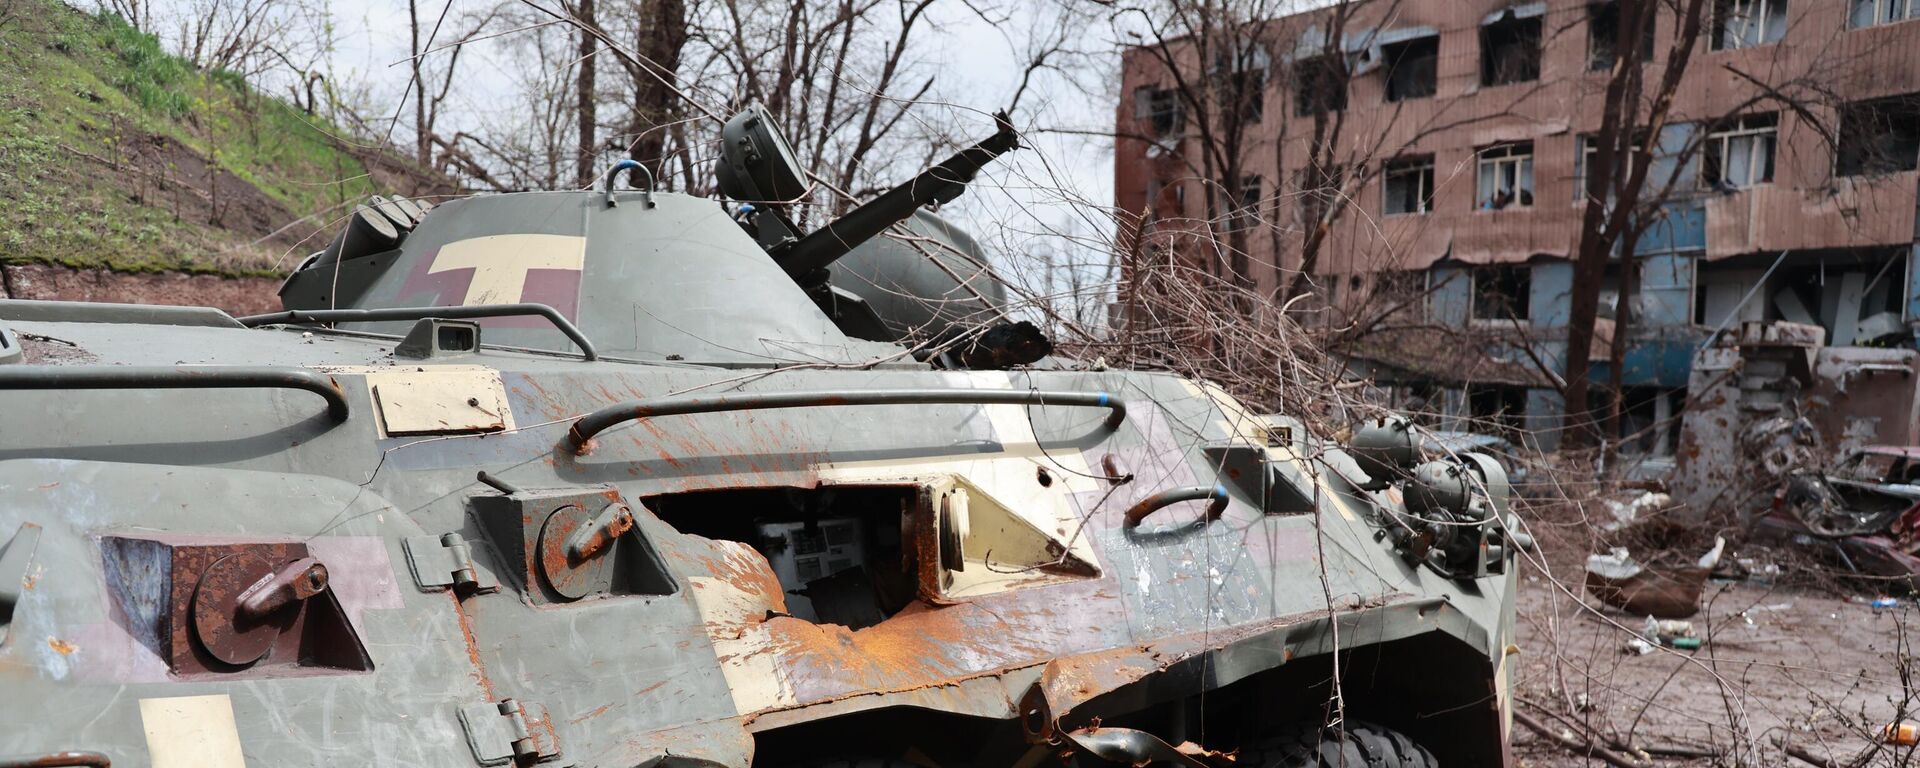 معدات عسكرية أوكرانية محروقة في مصنع المعادن باسم لينين المحرر في ماريوبول، أوكرانيا 18 أبريل 2022 - سبوتنيك عربي, 1920, 23.04.2022